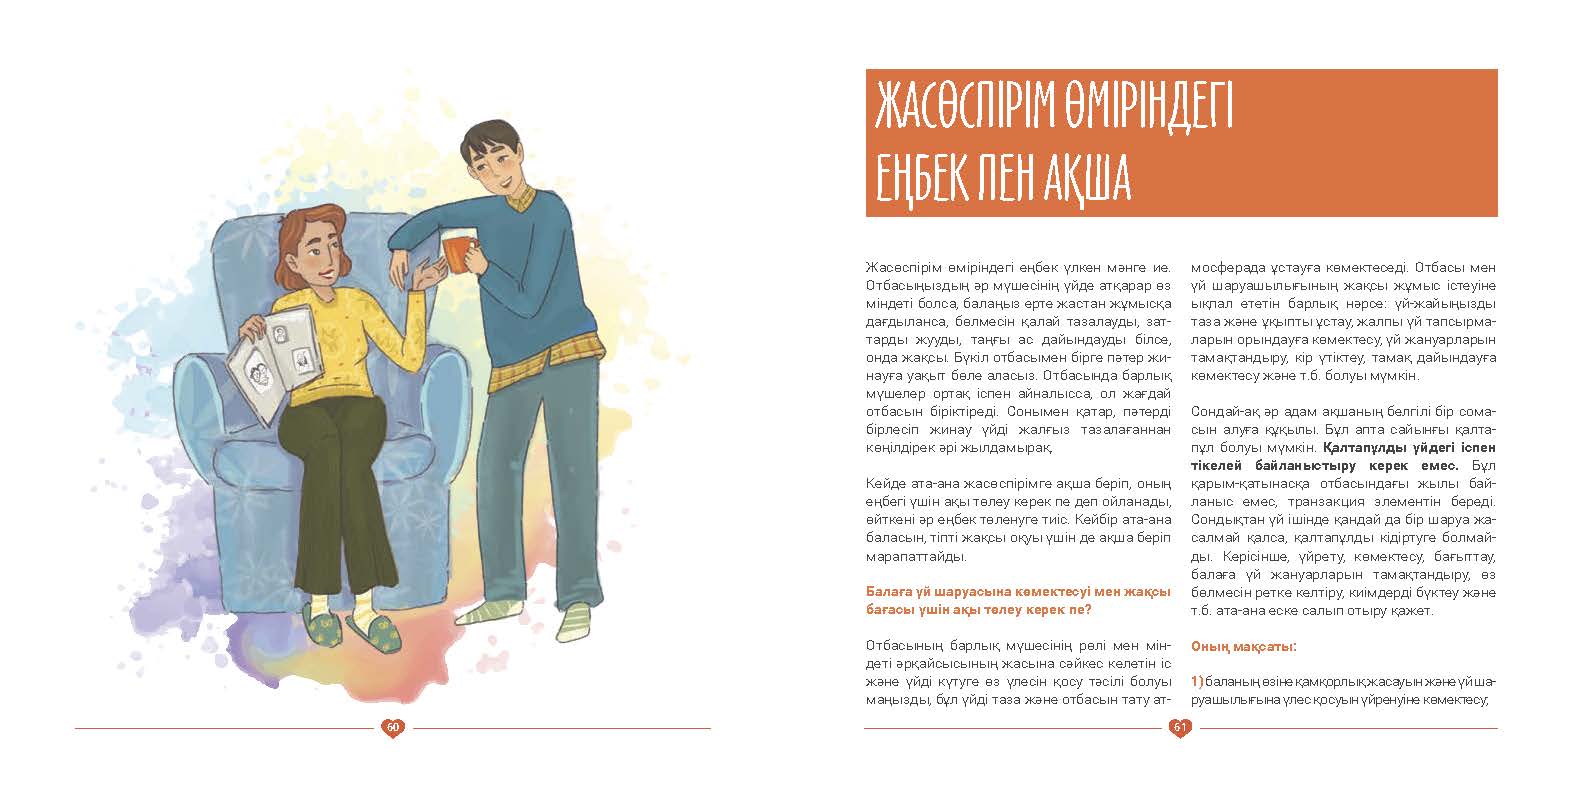 EVAC brochure KAZ (31).jpg